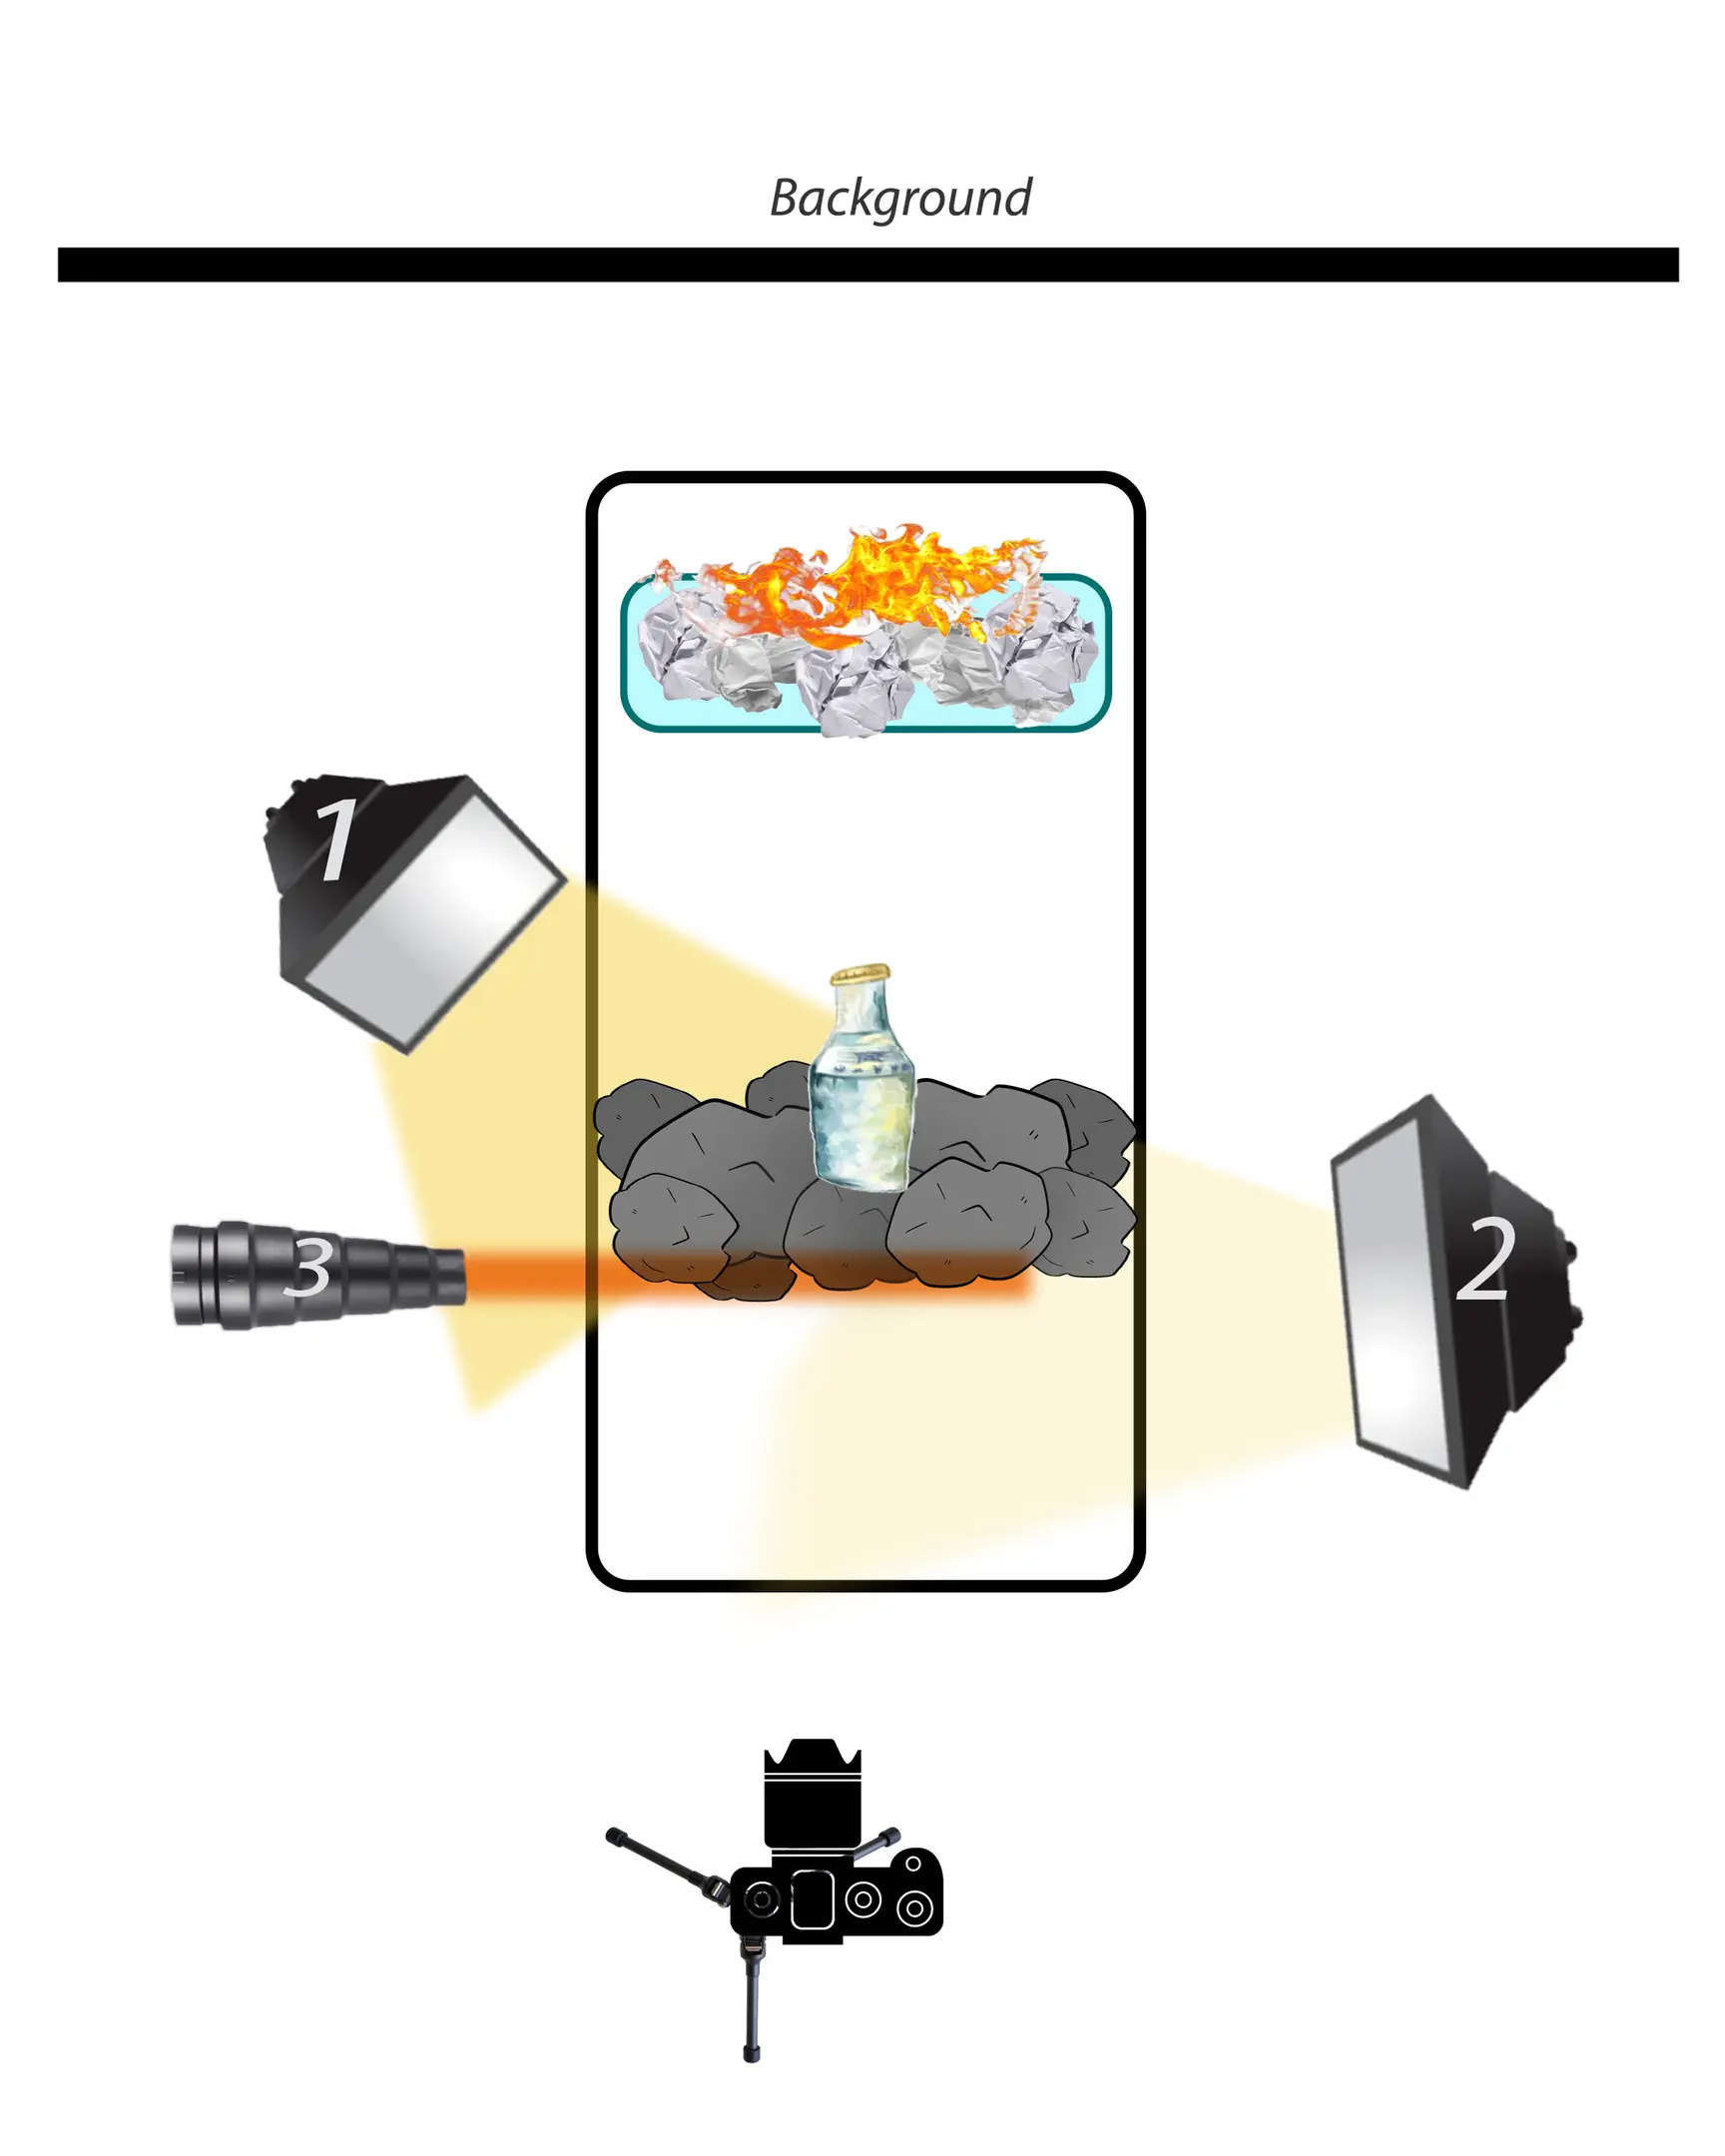 Светлинна схема 1. Тази диаграма показва бутилка, стояща в въглищата, на заден план в стъклен топлоустойчив съд - който е изобразен със син правоъгълник със заоблени ръбове - има хартия, която гори. Диаграмата показва 2 светкавици и посоката на тяхното светене. Както и позицията на фона и камерата.